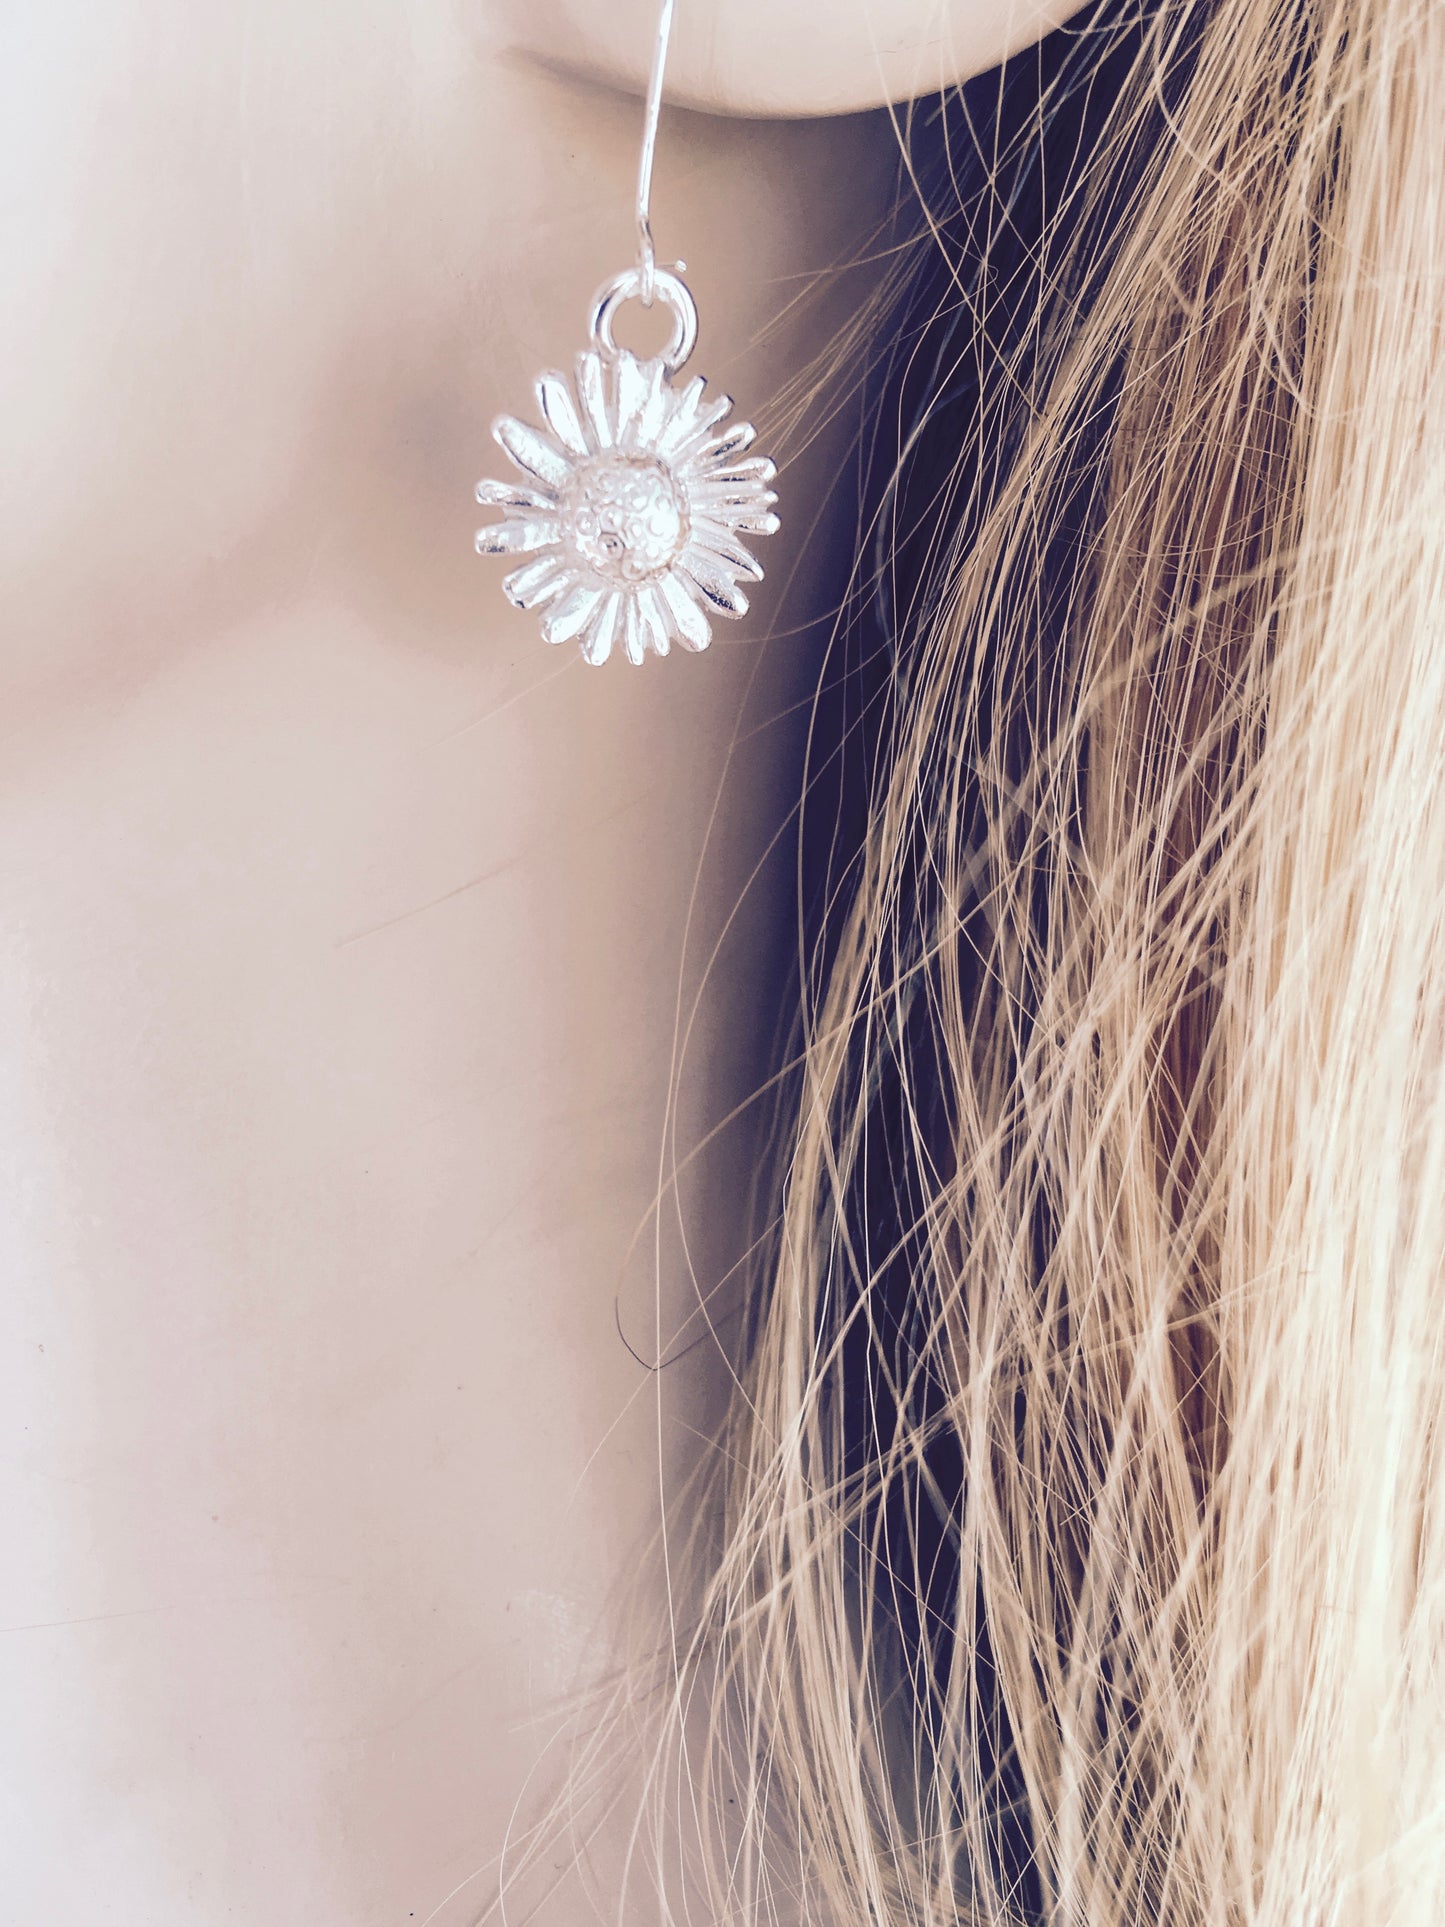 Daisy flower earrings